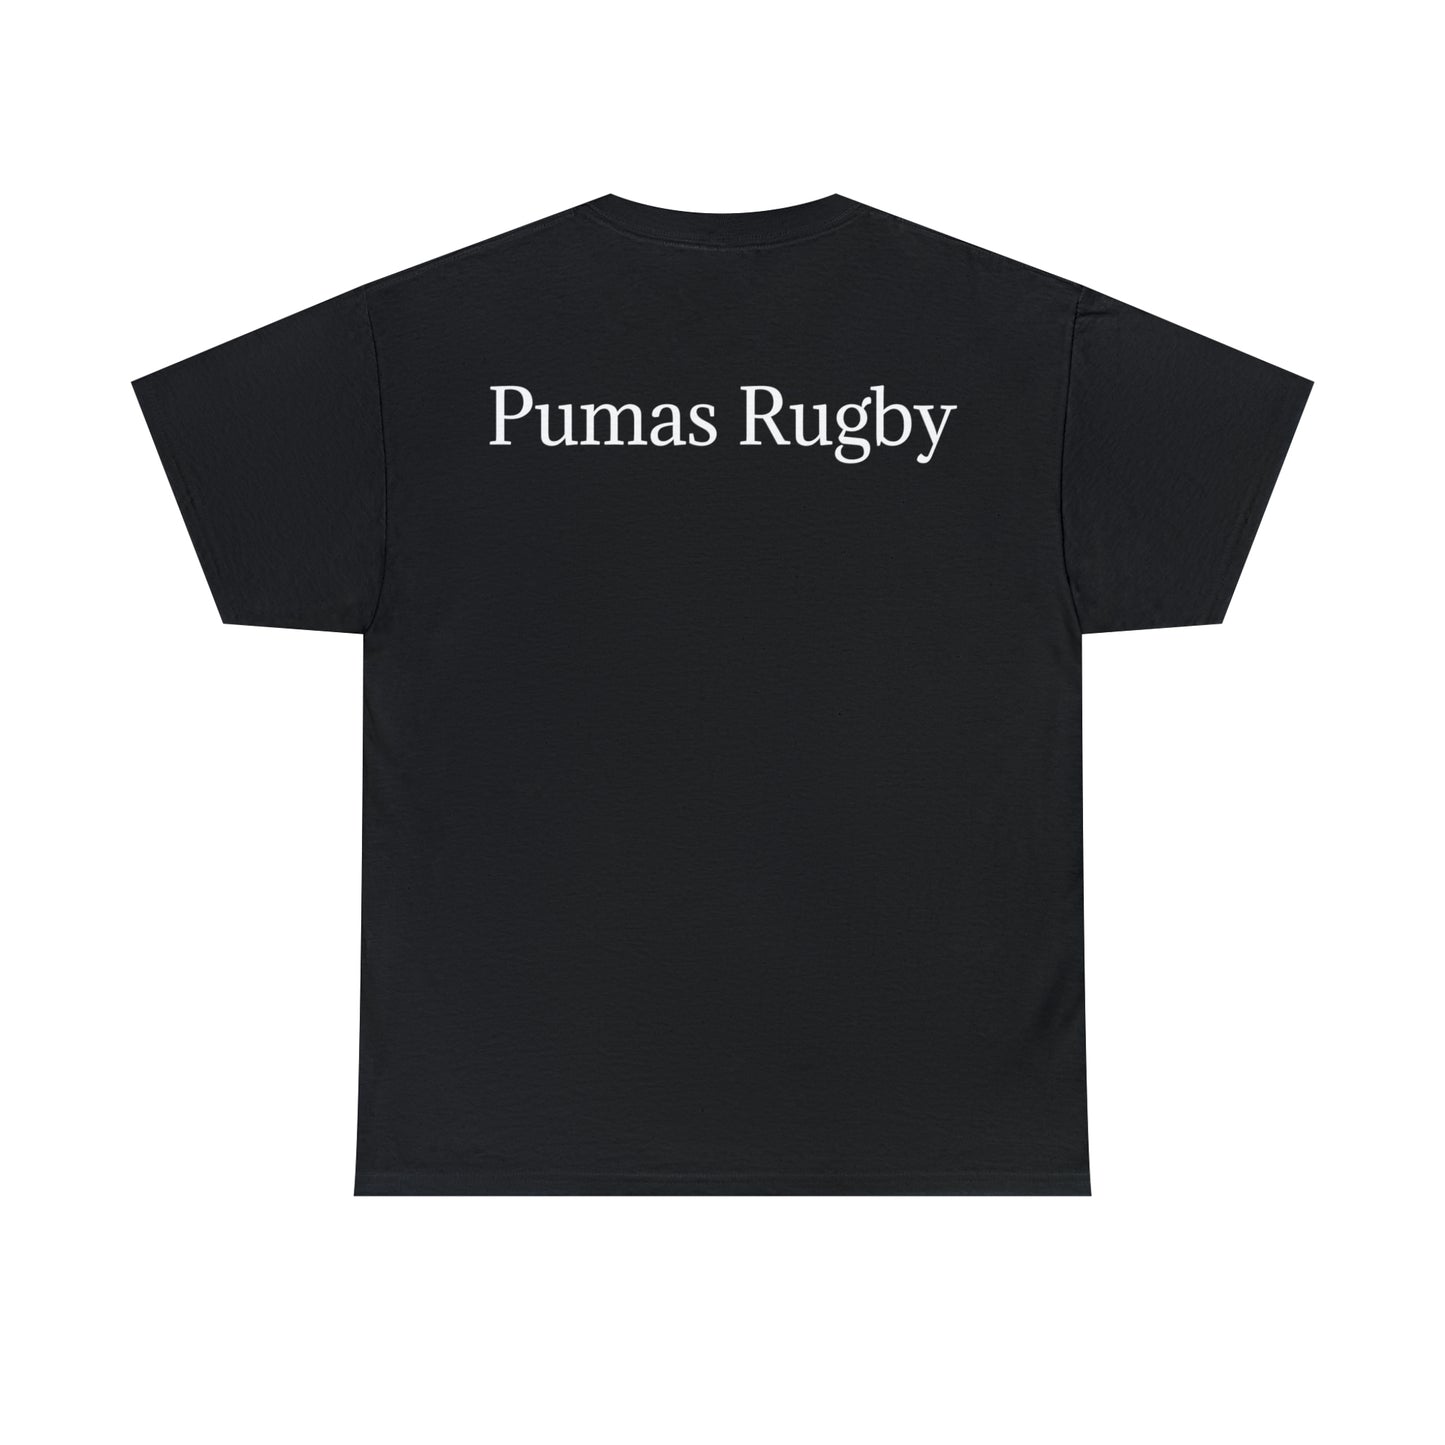 Pumas RWC photoshoot - black shirt